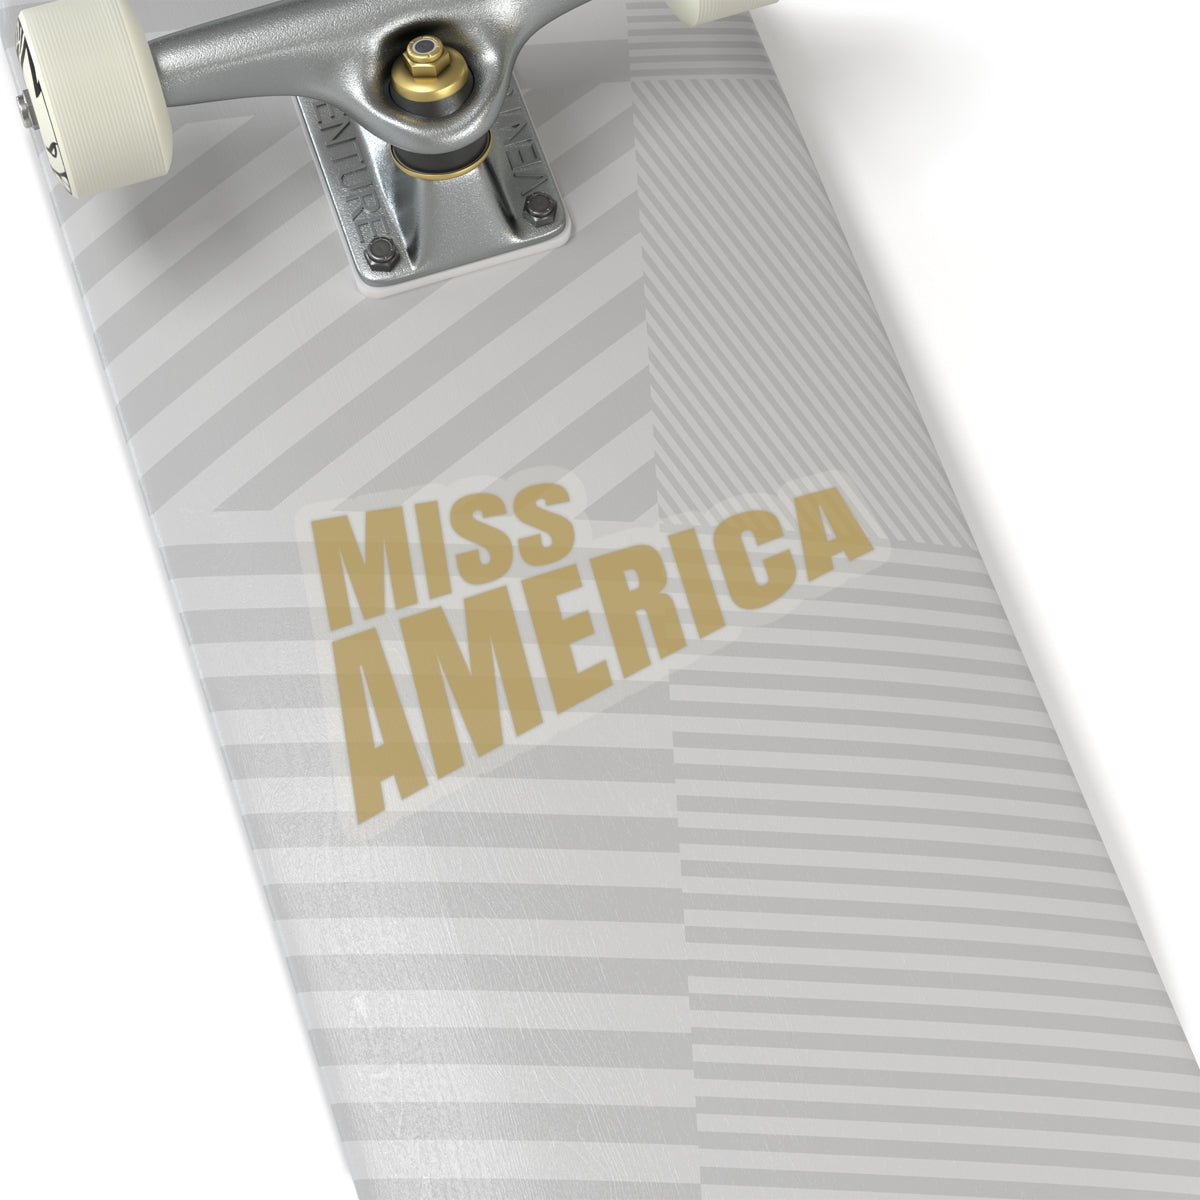 Vintage Miss America Kiss-Cut Stickers